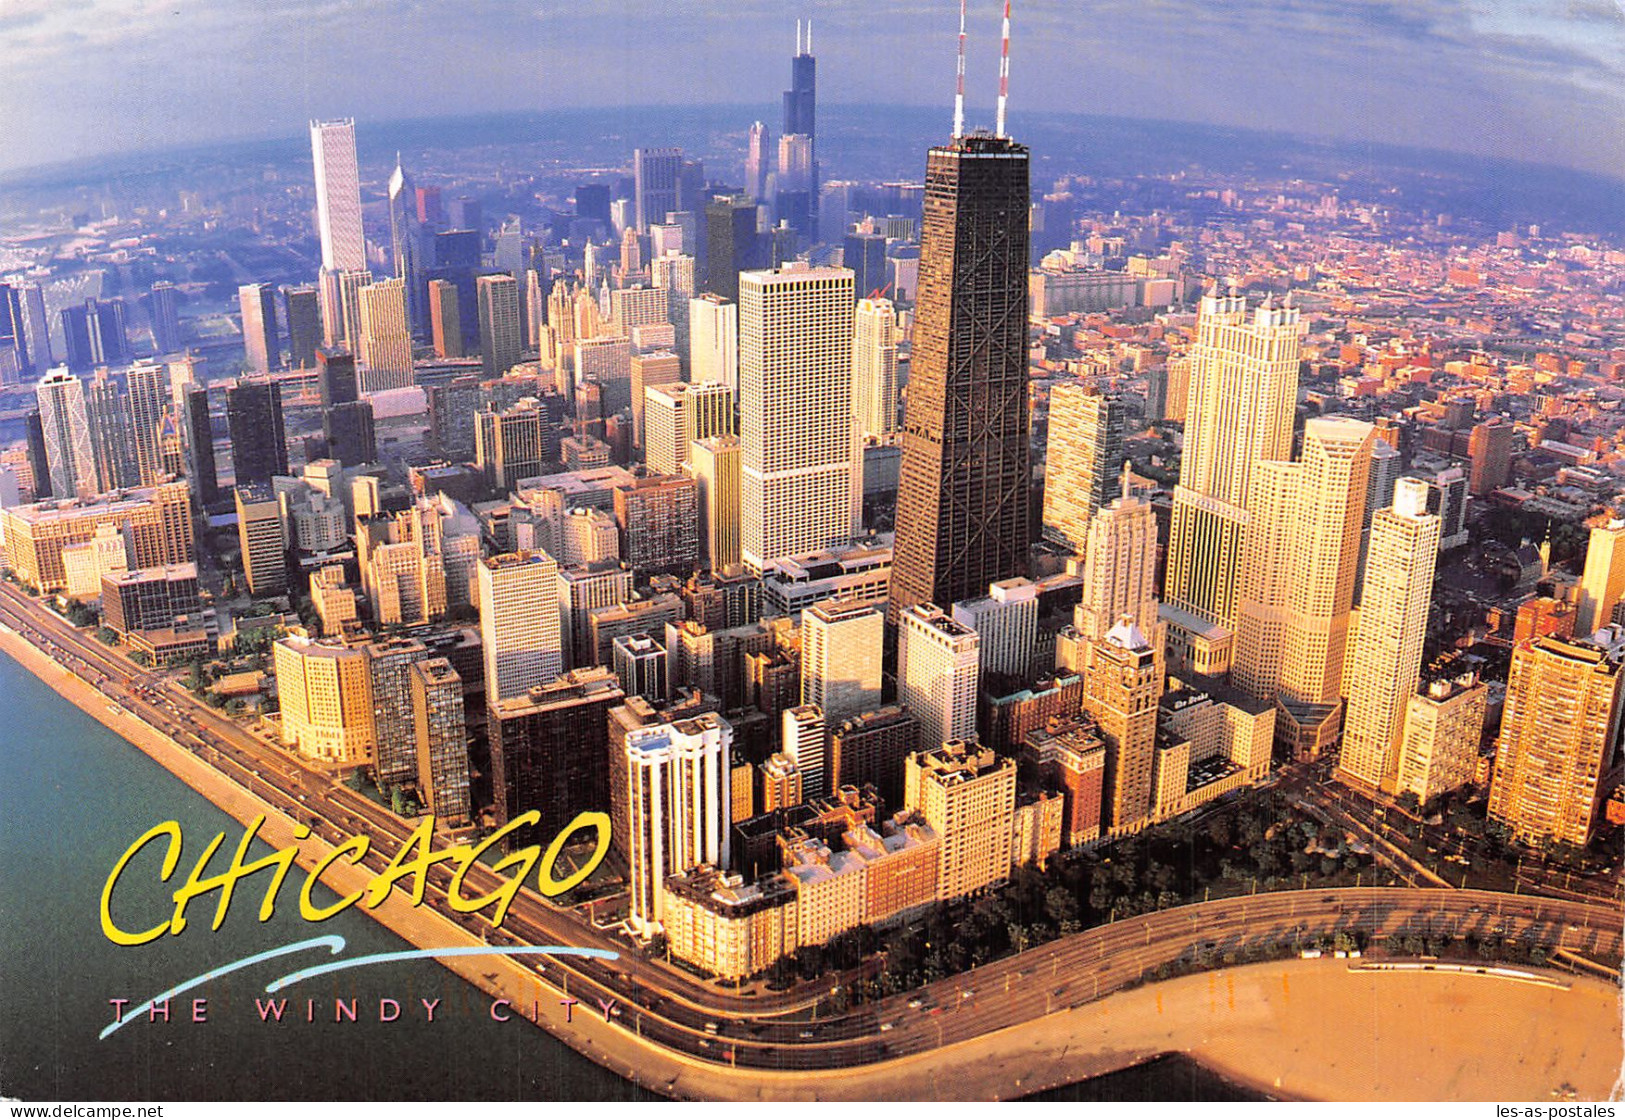 USA IL CHICAGO - Chicago